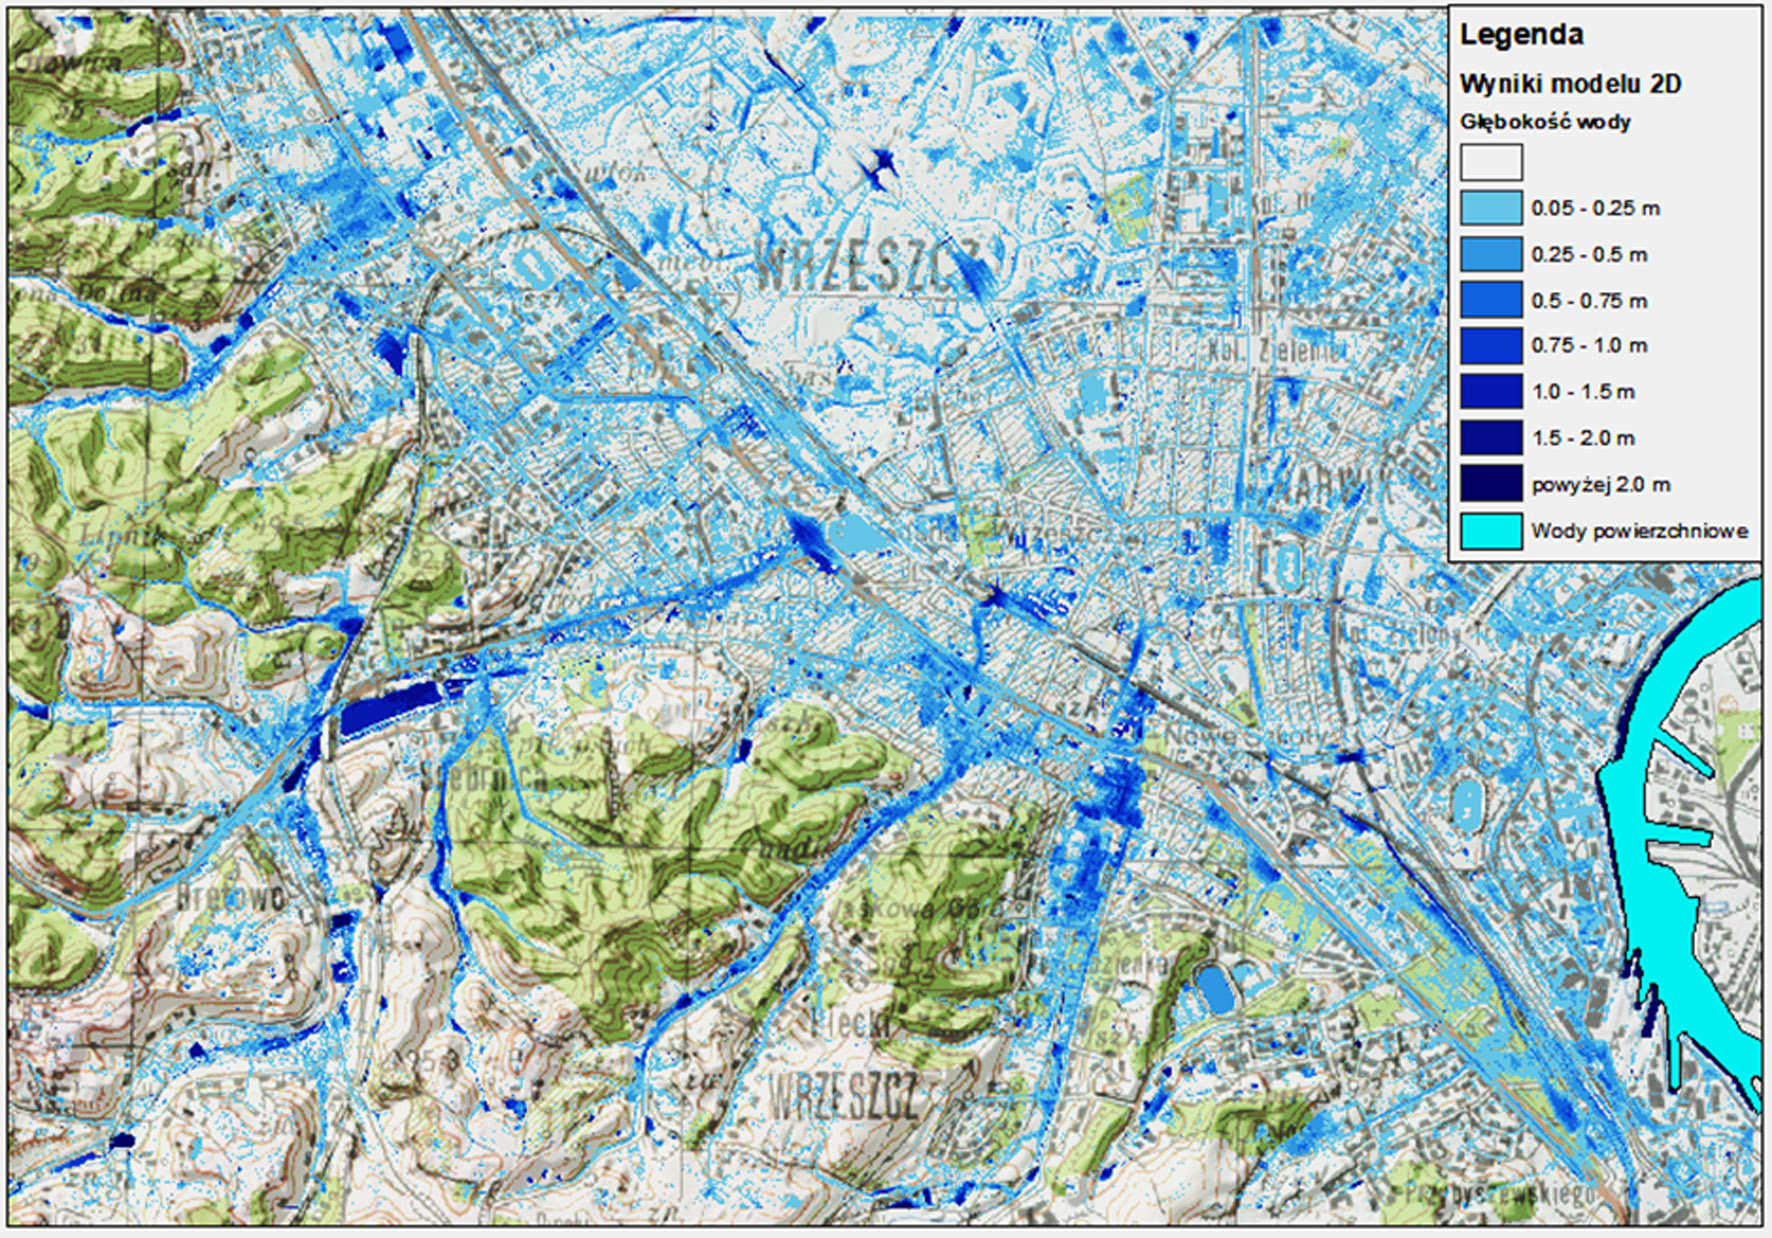 Obszary zagrożenia błyskawicznymi powodziami miejskimi wyznaczone dla Gdańska za pomocą oprogramowania do dwuwymiarowego modelowania hydrodynamicznego.